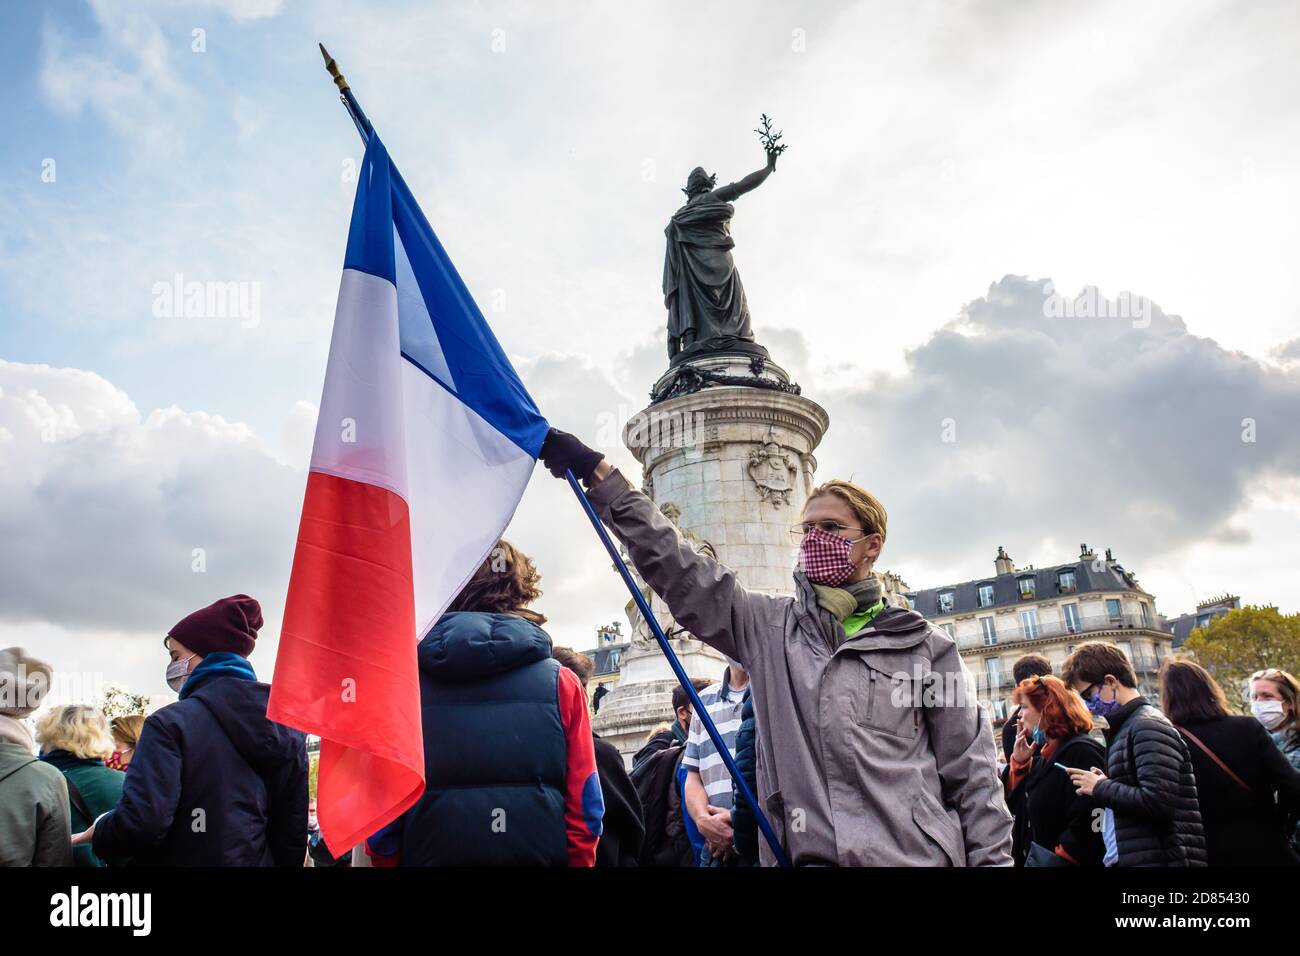 Un homme portant un masque facial porte un drapeau français au pied du Monument à la République lors d'une manifestation à Paris, en France. Banque D'Images